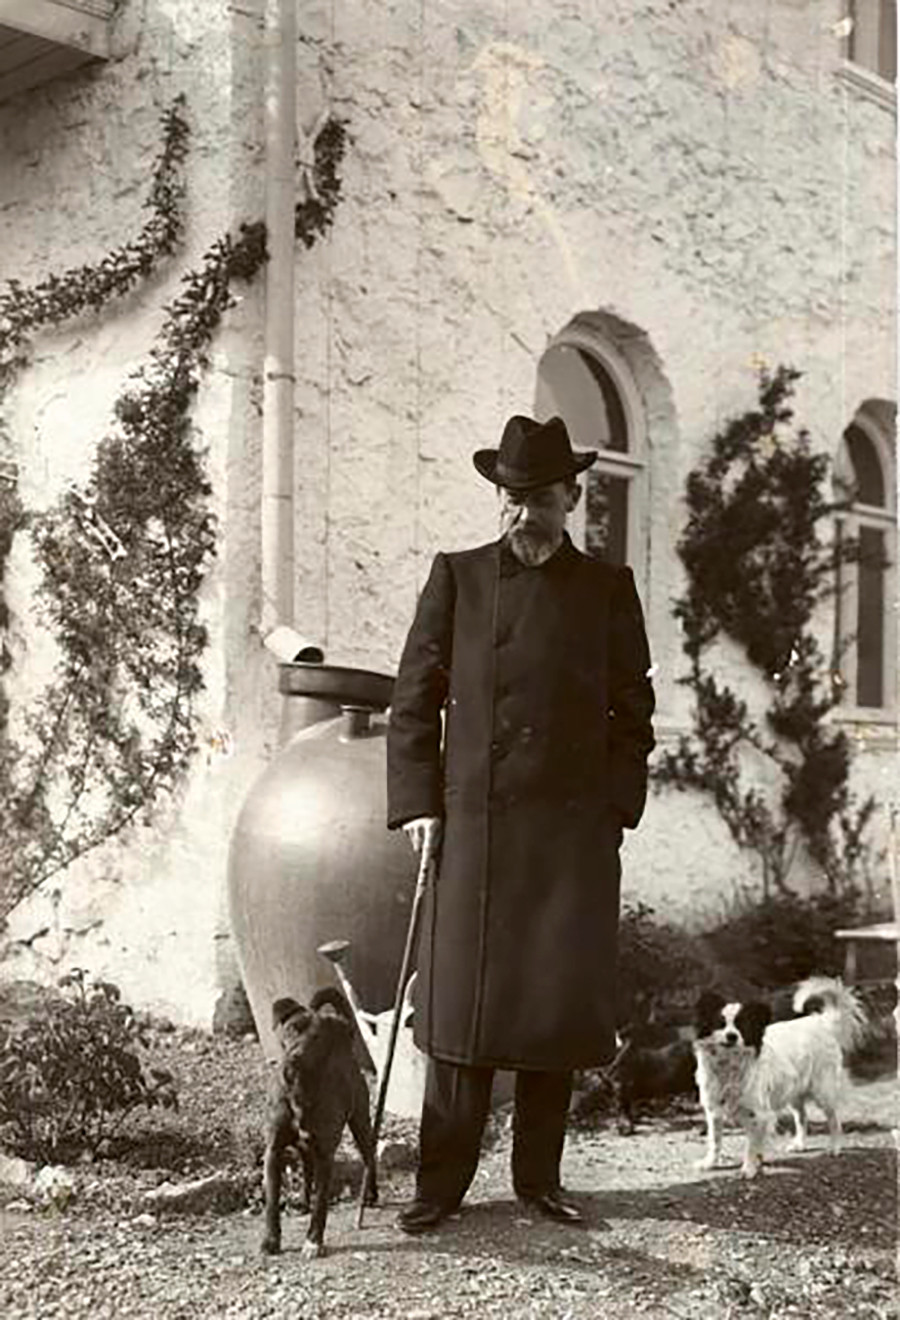 Le dramaturge Anton Tchekhov possédait une datcha en Crimée. Il se promène ici avec ses chiens, à Yalta, en 1903.

